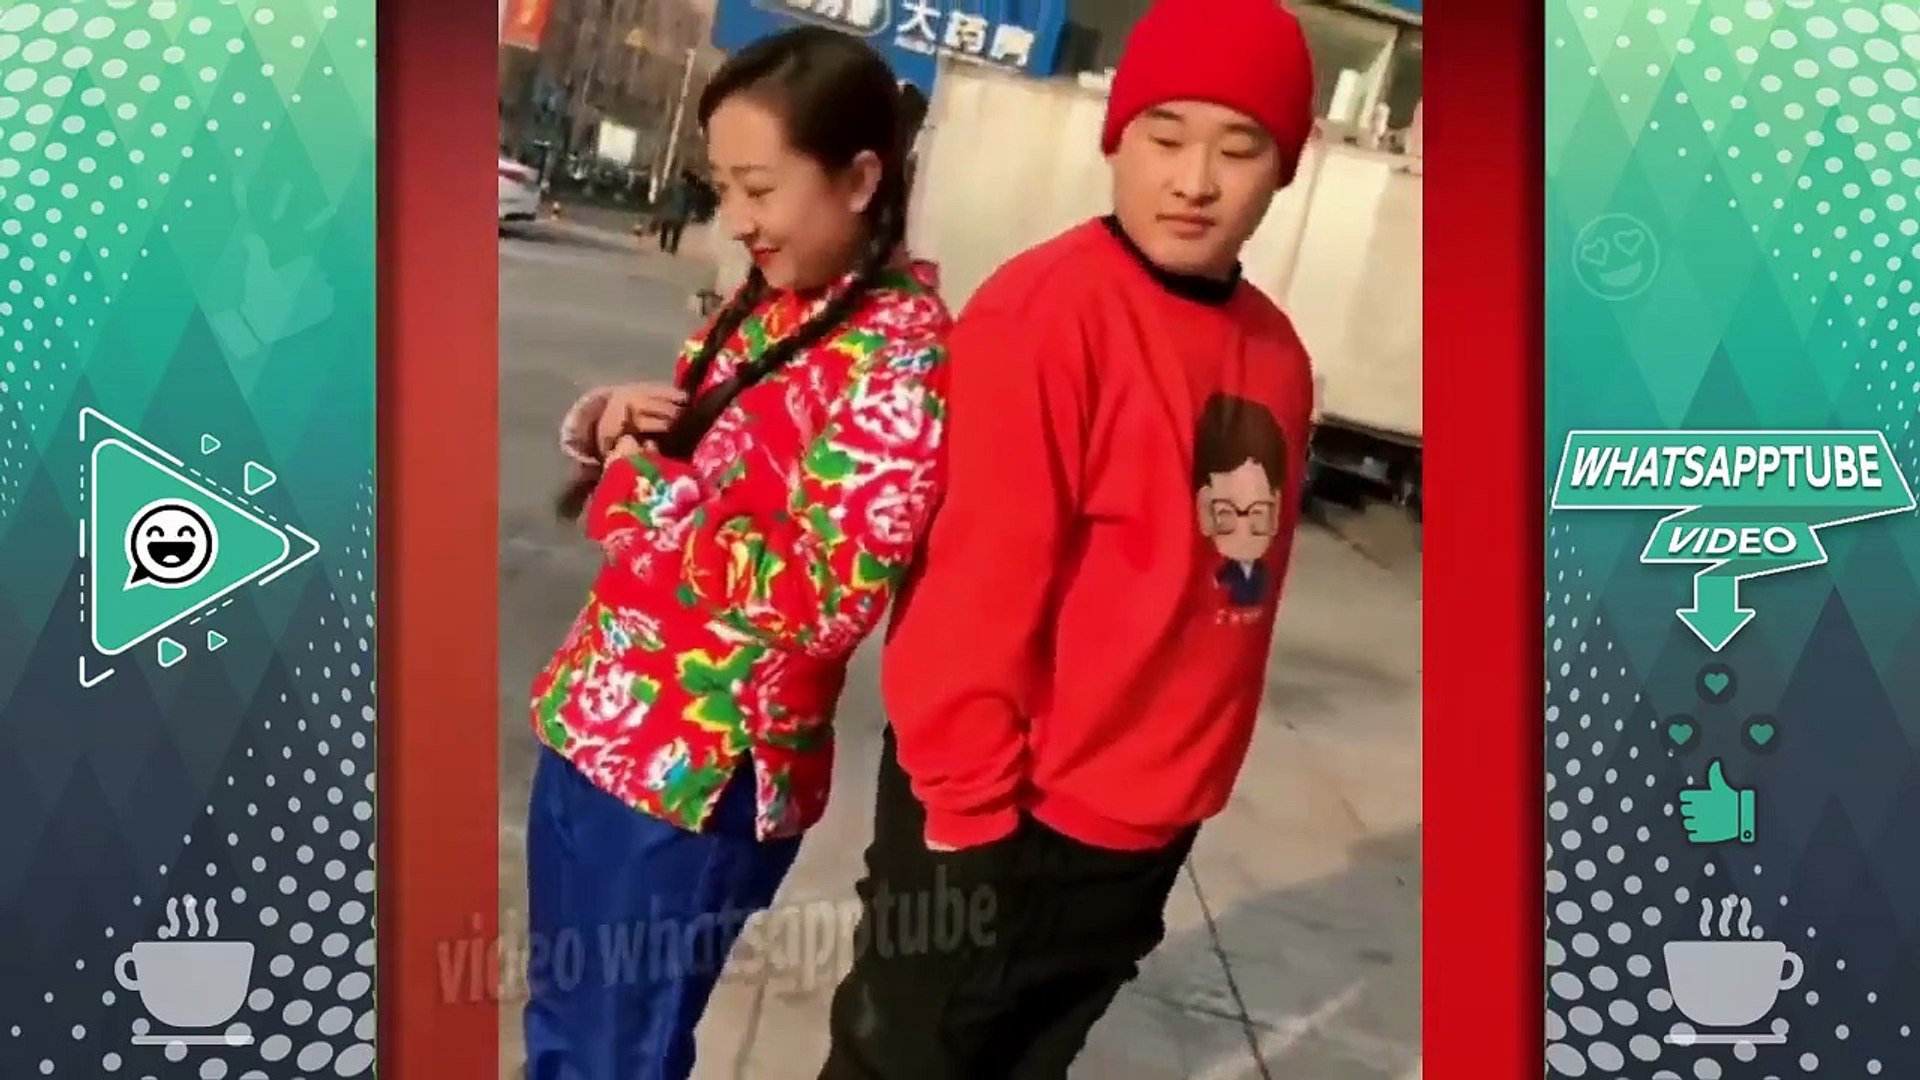 إنسى همومك مع الصينيين #P58 - ضحك بلا حدود مع أحلى الطرائف المضحكة - 2019 -  فيديو Dailymotion